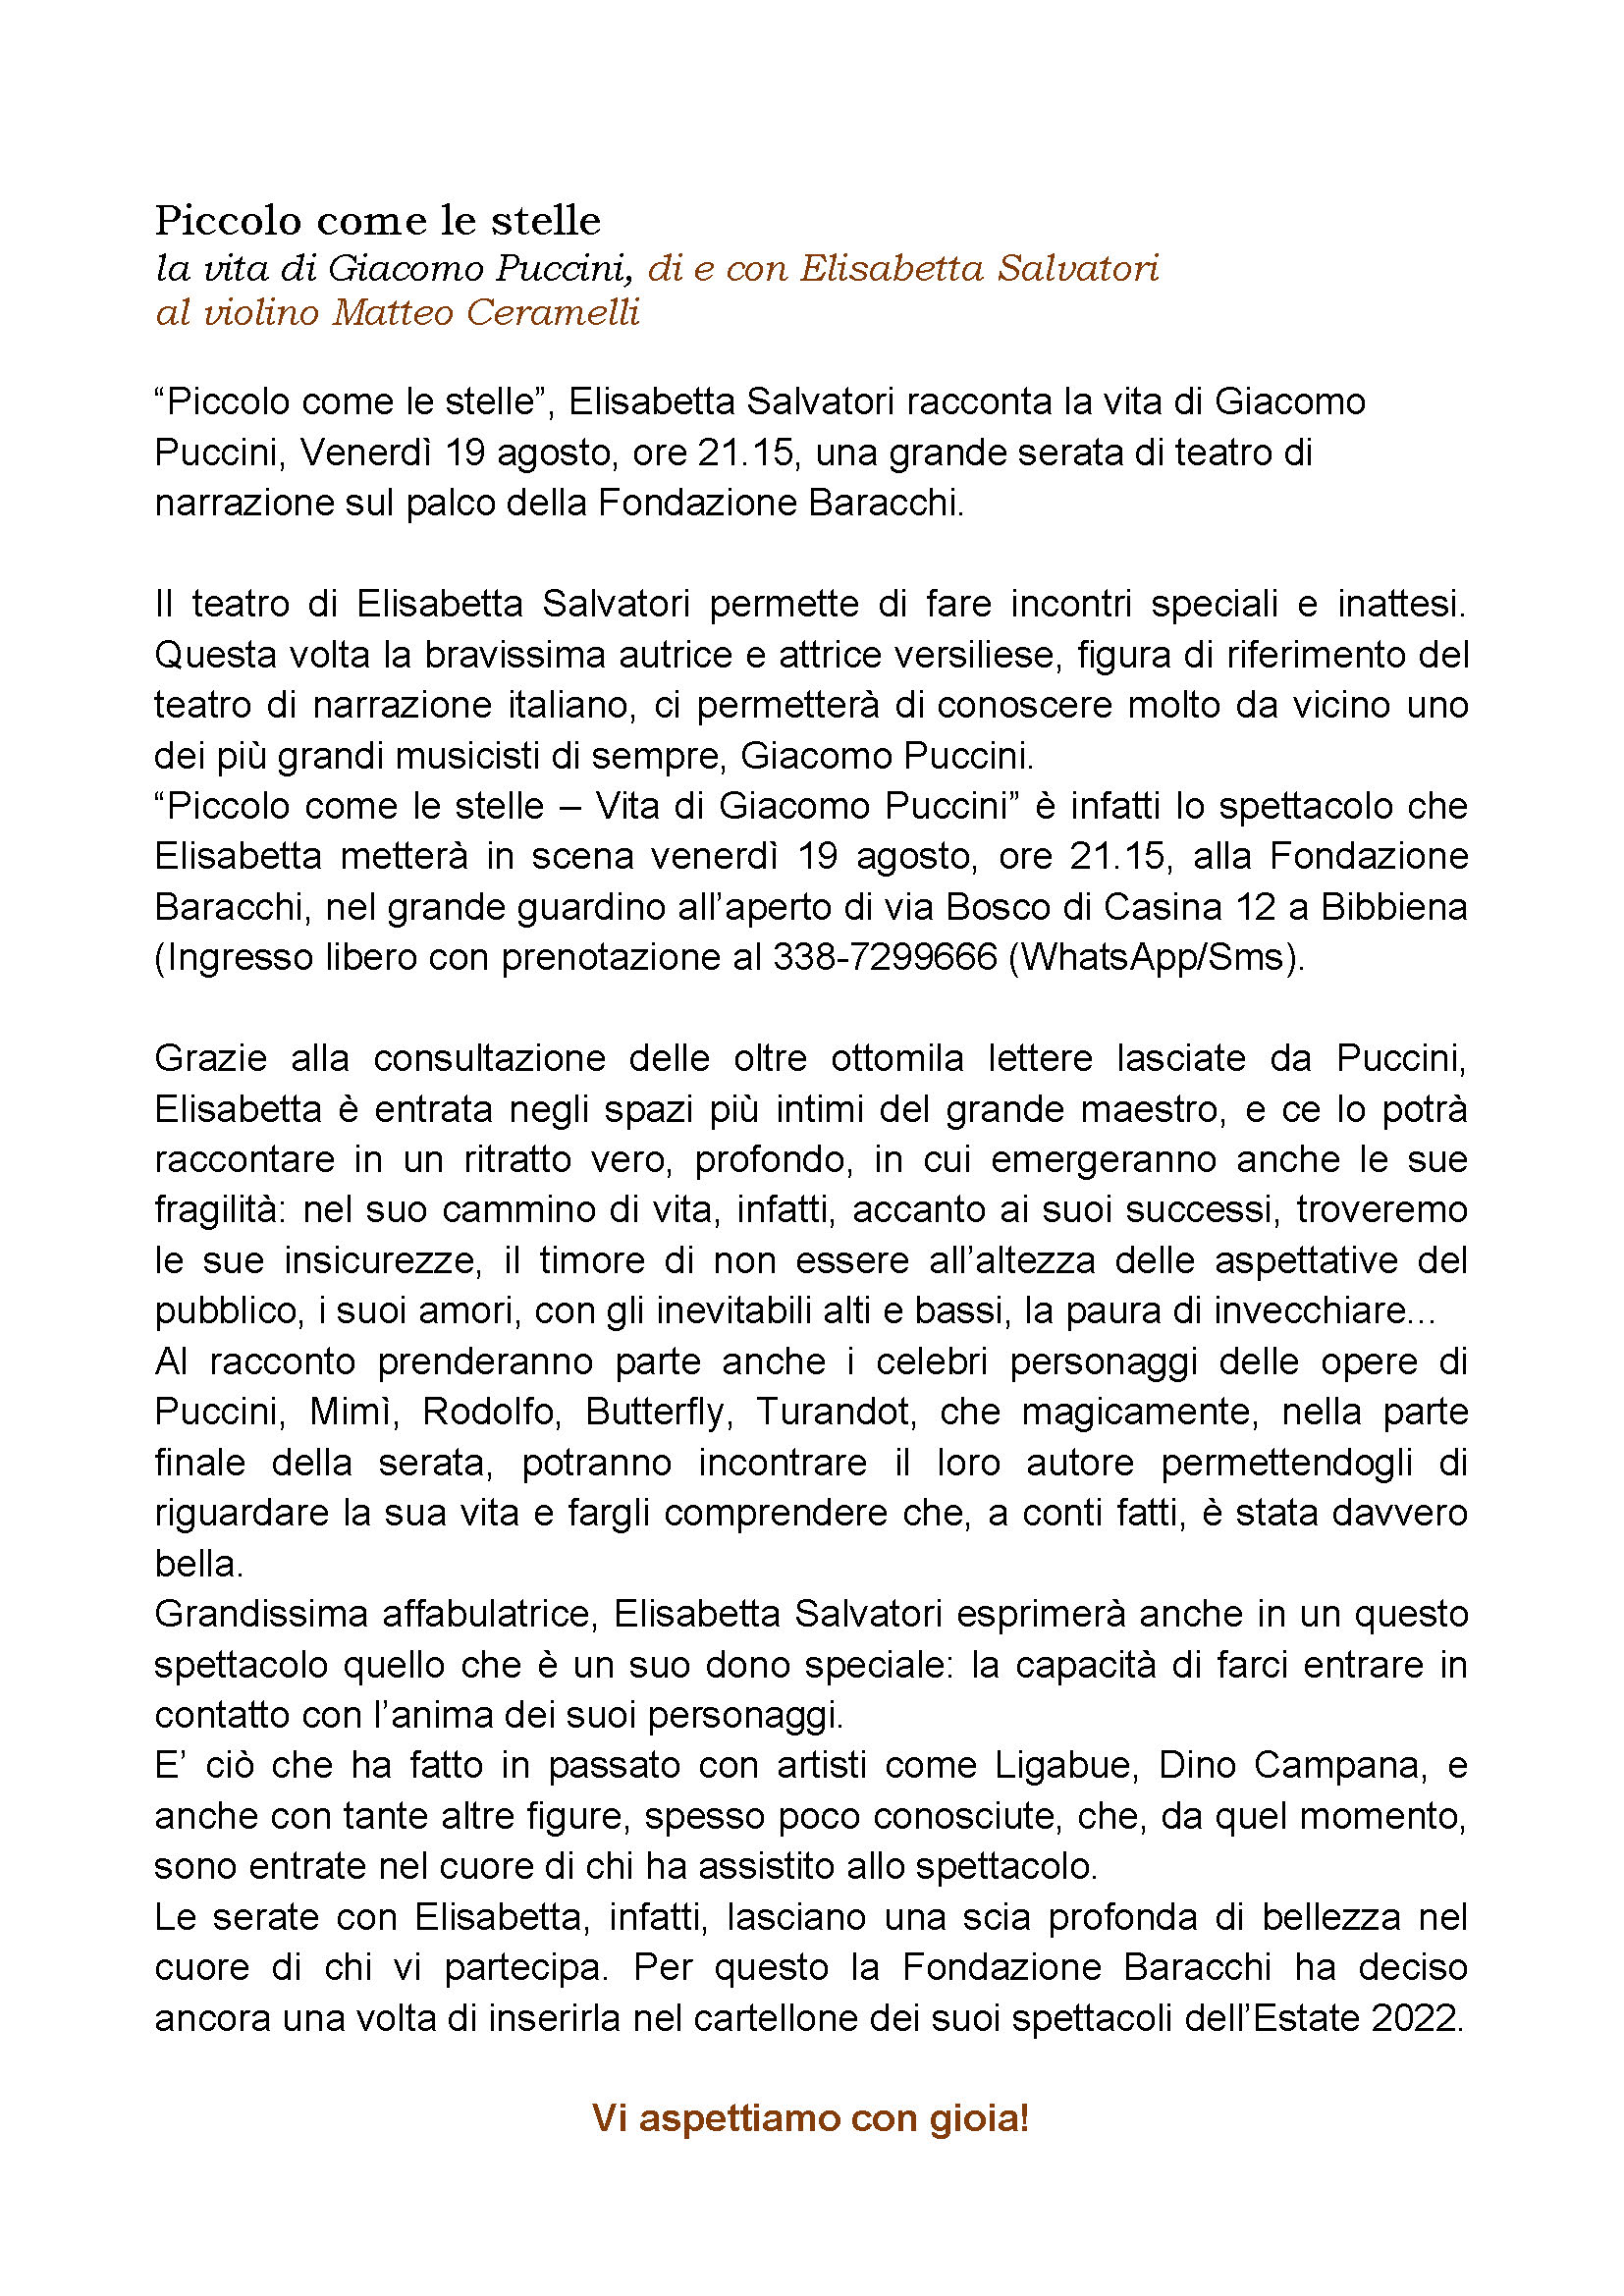 Invito Vita di Puccini con E. Salvatori 19 agosto